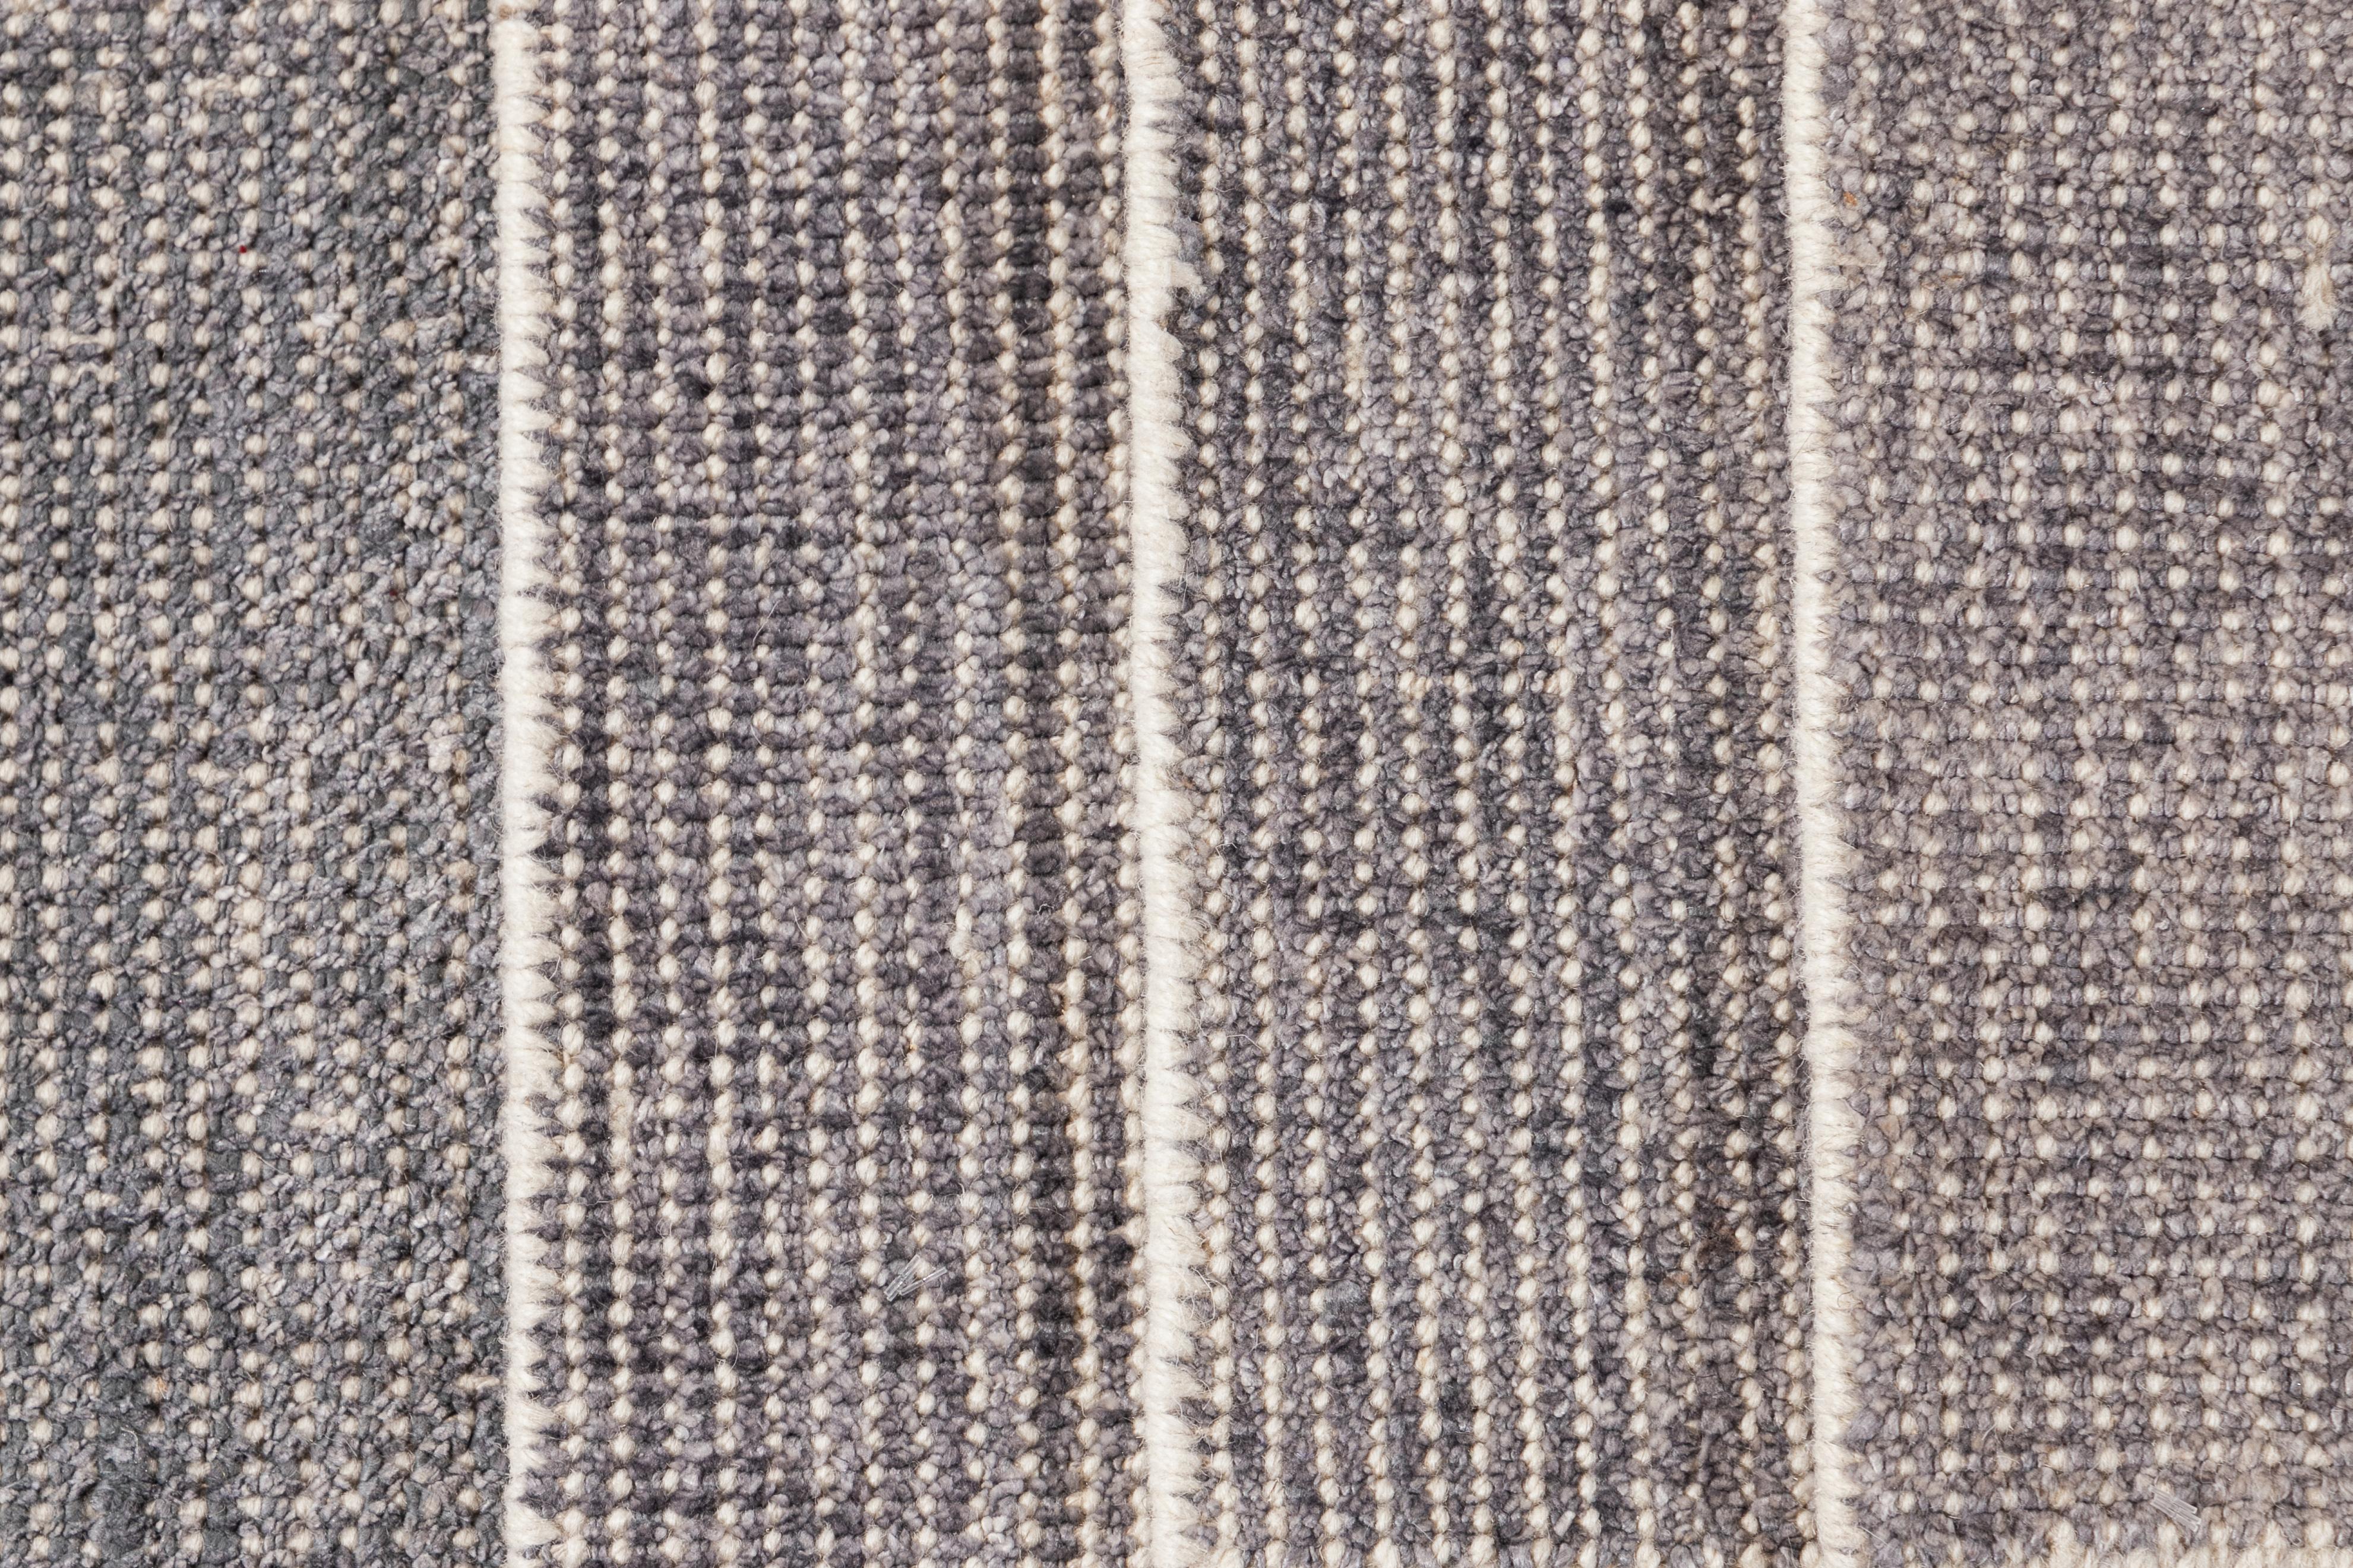 Individueller Boho-Teppich aus Wolle und Seide. Kundenspezifische Größen und Farben auf Bestellung.

Material: Wolle/Bambusseide
Vorlaufzeit: Ca. 12 Wochen
Verfügbare Farben: über 100 Farbtöne.
Hergestellt in Indien.